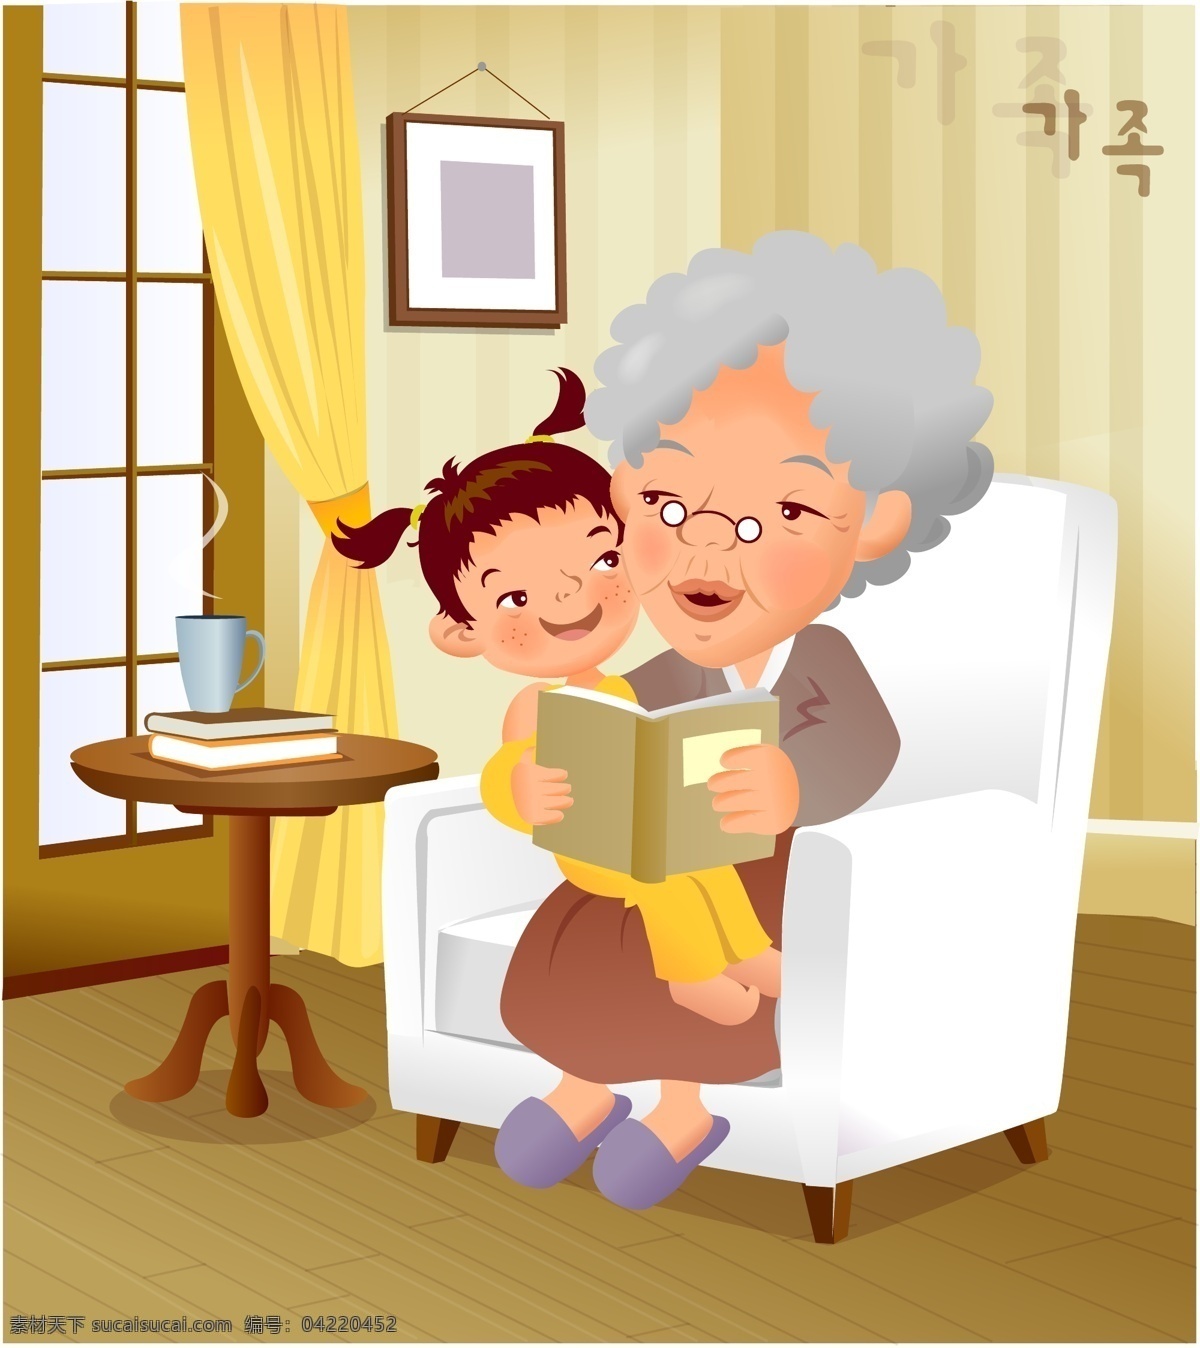 iclickart 卡通 家庭 插画 矢量 读书 家人 可爱 漫画 书桌 祖母 讲故事的人 矢量图 矢量人物